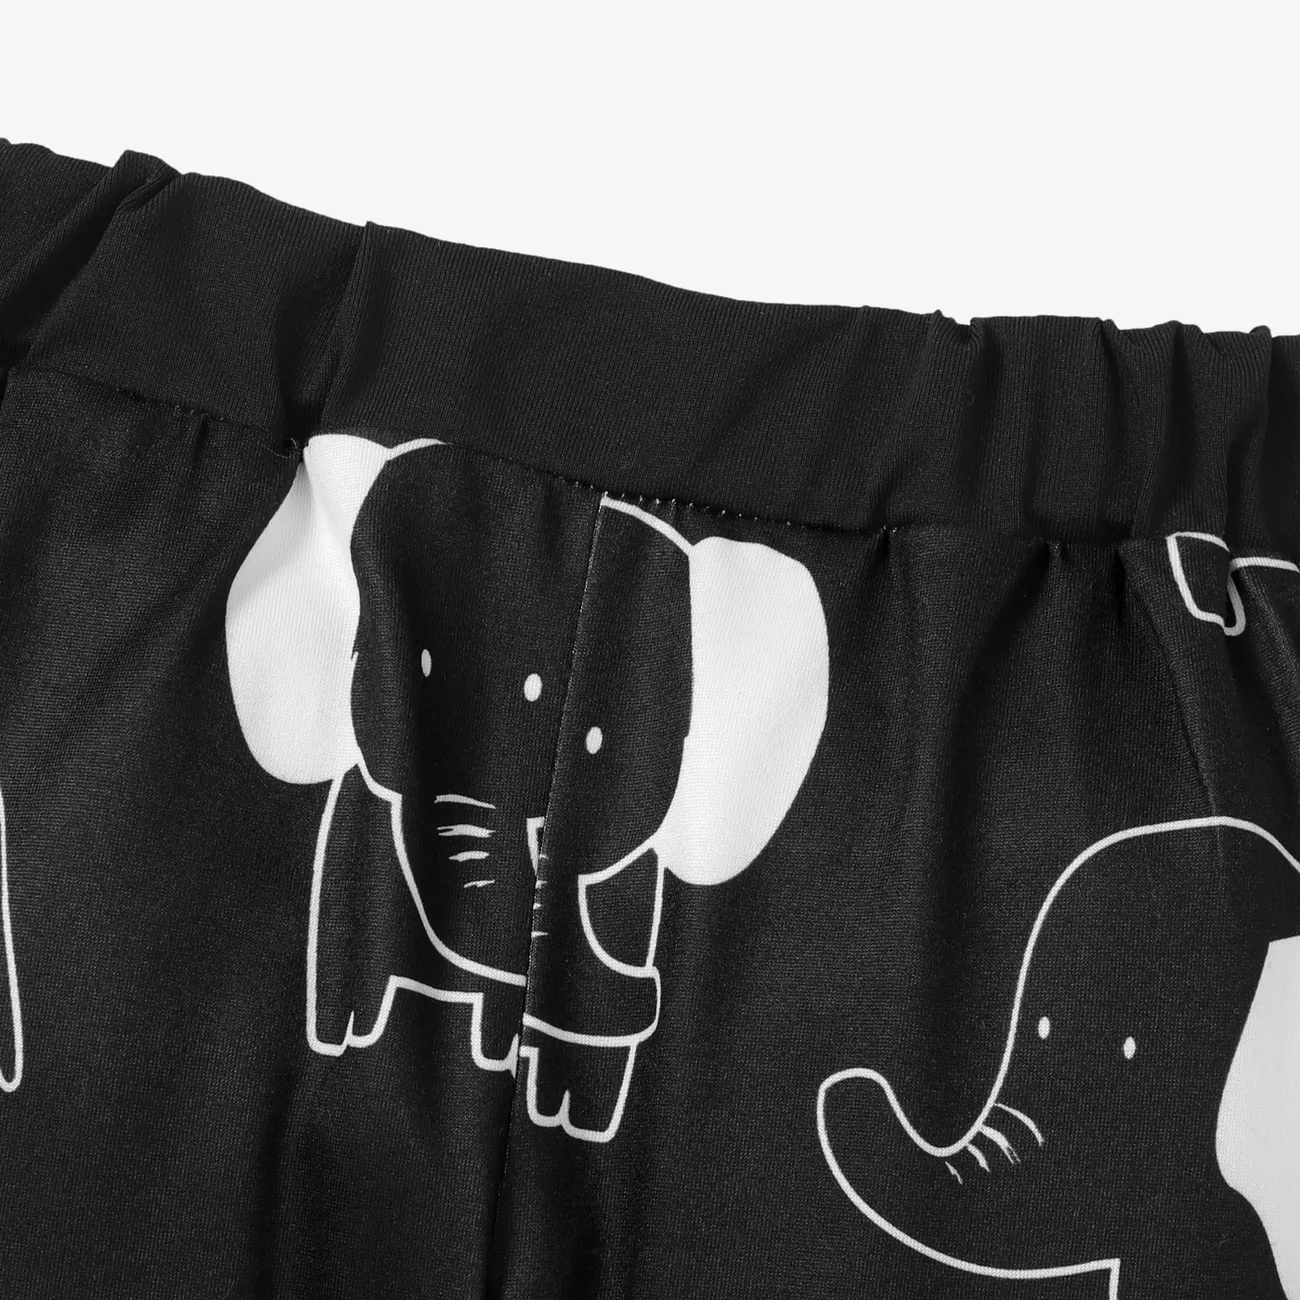 pantalon imprimé éléphant bébé garçon/fille Noir big image 1